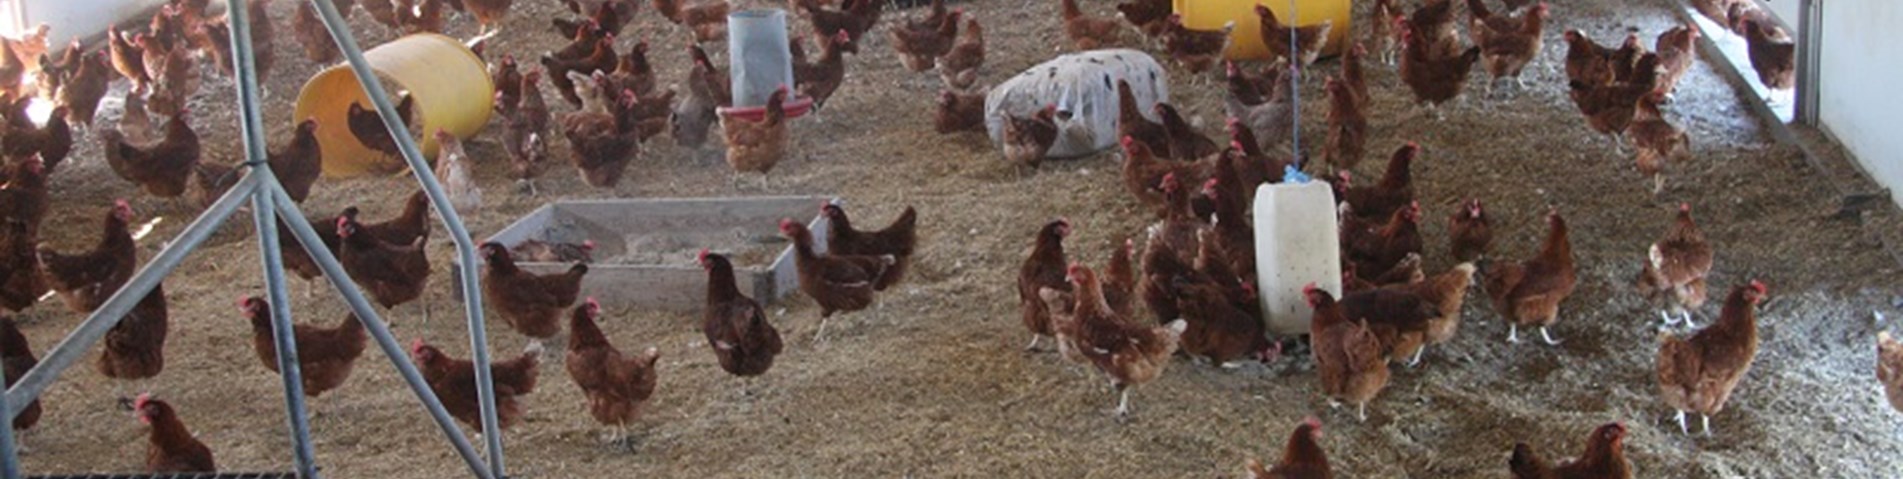 فروش مرغ تخمگذار در شیراز - سپید طیور